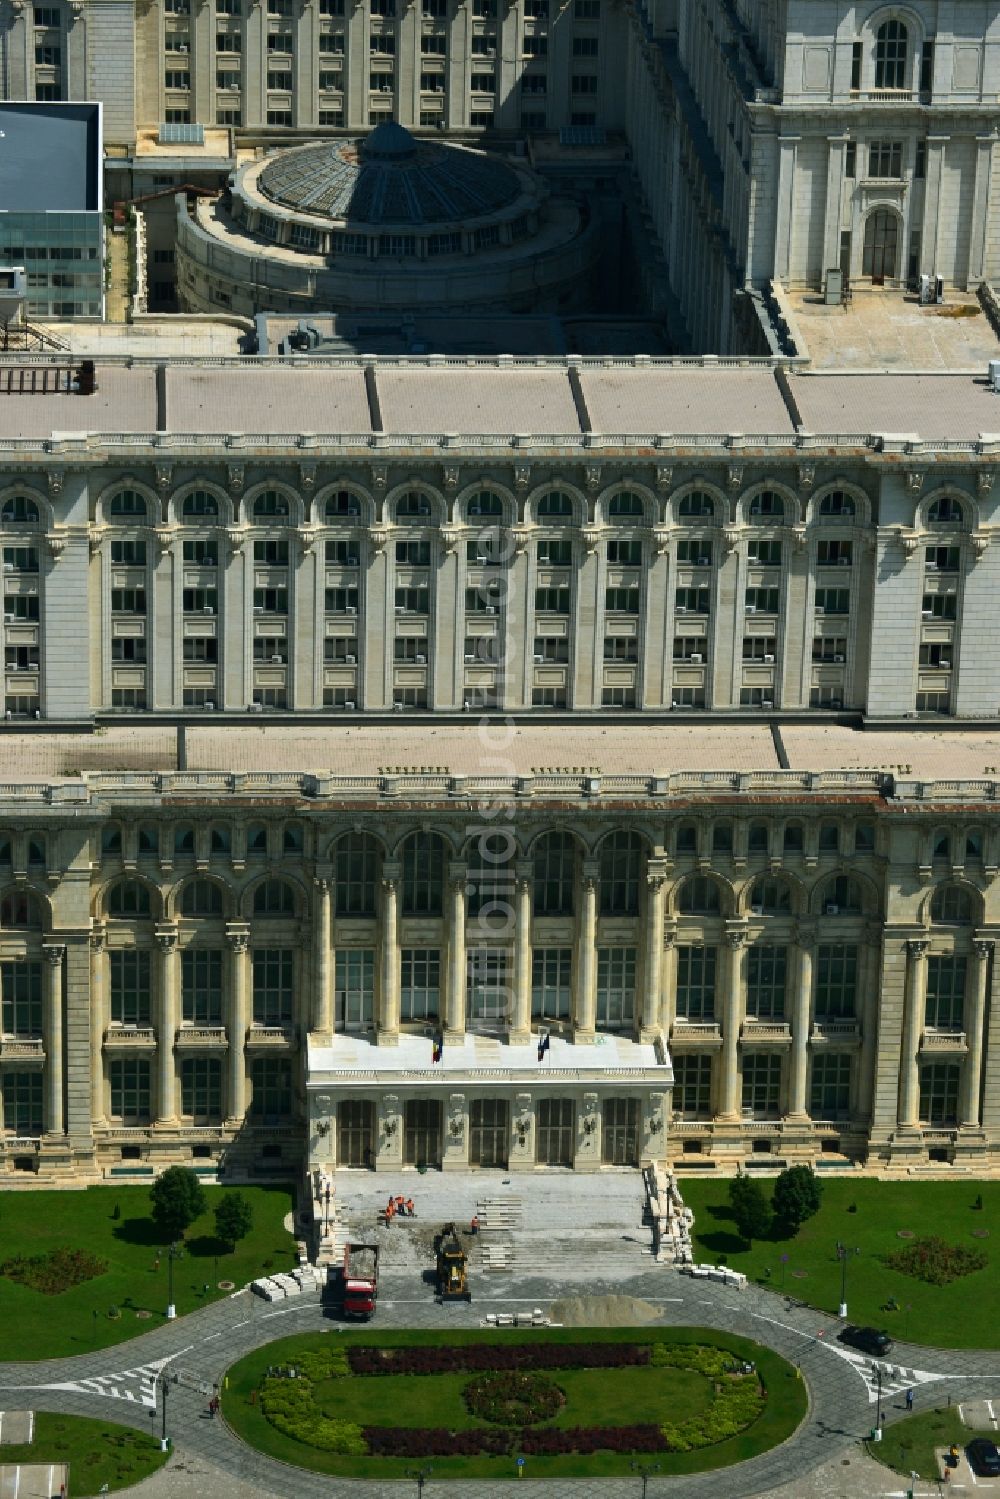 Luftbild Bukarest - Gebäudekomplex Palast des Volkes in Bukarest in Rumänien